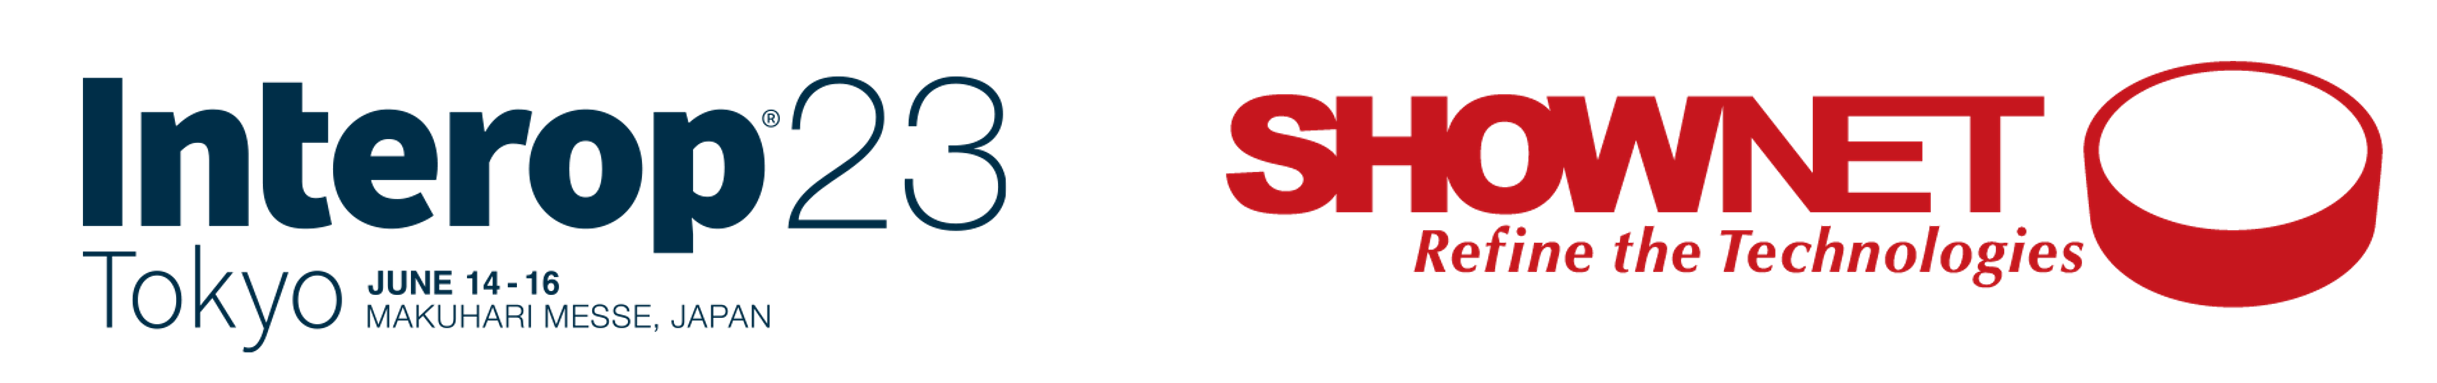 Interop ShowNet logo